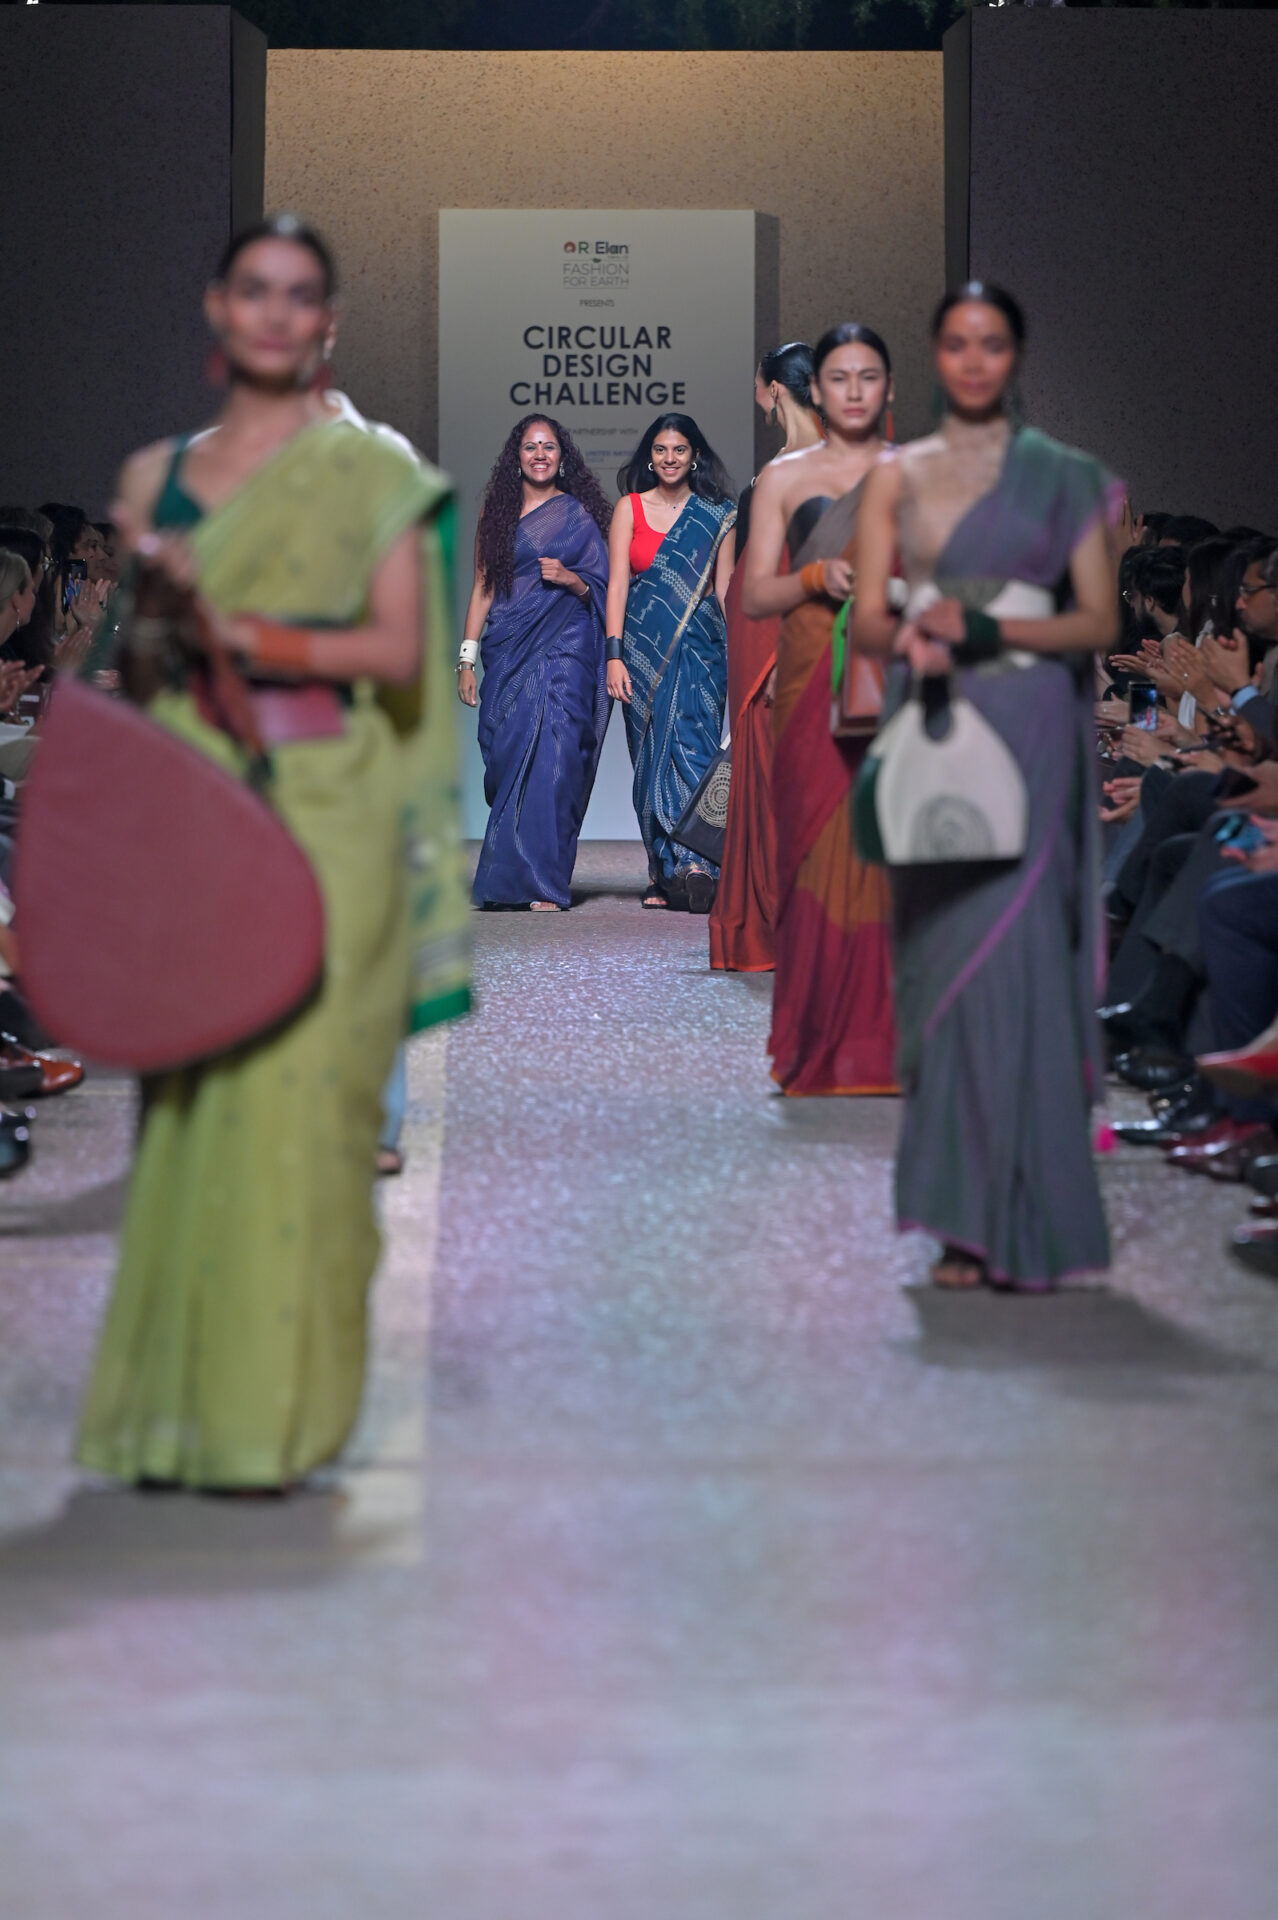 During Red carpet of R|ELAN PRESENTS CIRCULAR DESIGN CHALLENGE IN PARTNERSHIP WITH THE UNITED NATIONS IN INDIA show at the Lakmé Fashion Week 2023 at Pragati Maidan in New Delhi, India on 12th October 2023. Lakmé Fashion Week 2023 at Pragati Maidan in New Delhi, India on 12th October 2023 Photo: Perfect Shadows / FDCI x Lakme Fashion Week / RISE Worldwide